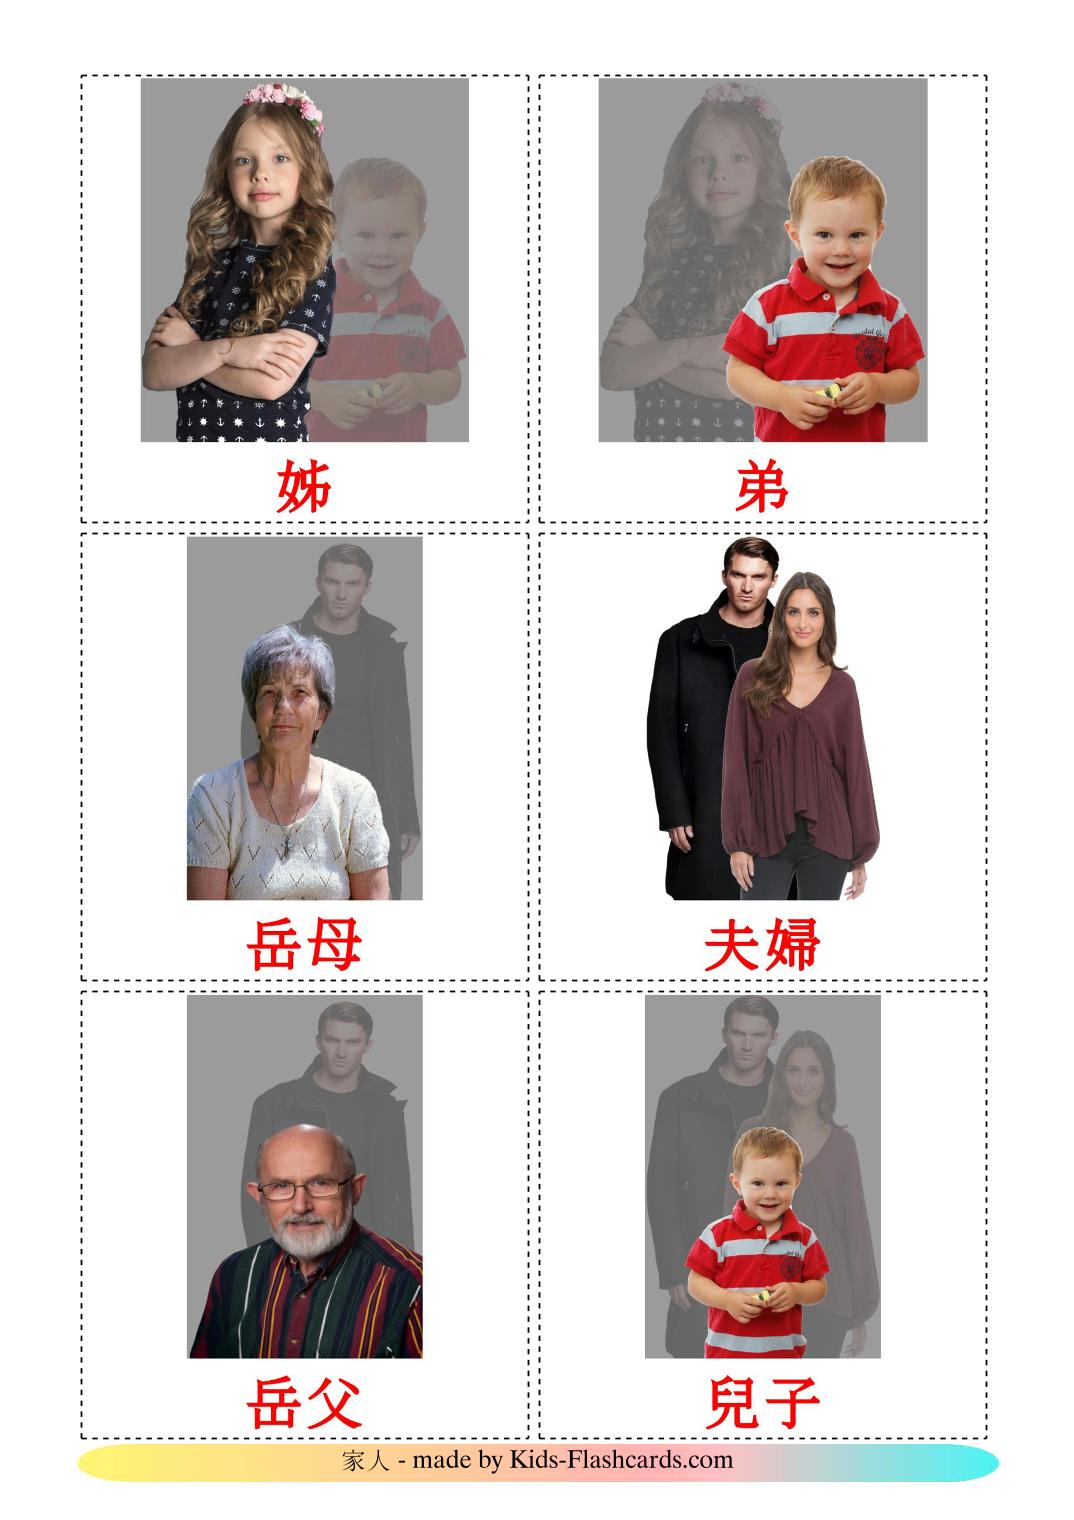 Les Membres de la Famille - 32 Flashcards chinois(traditionnel) imprimables gratuitement